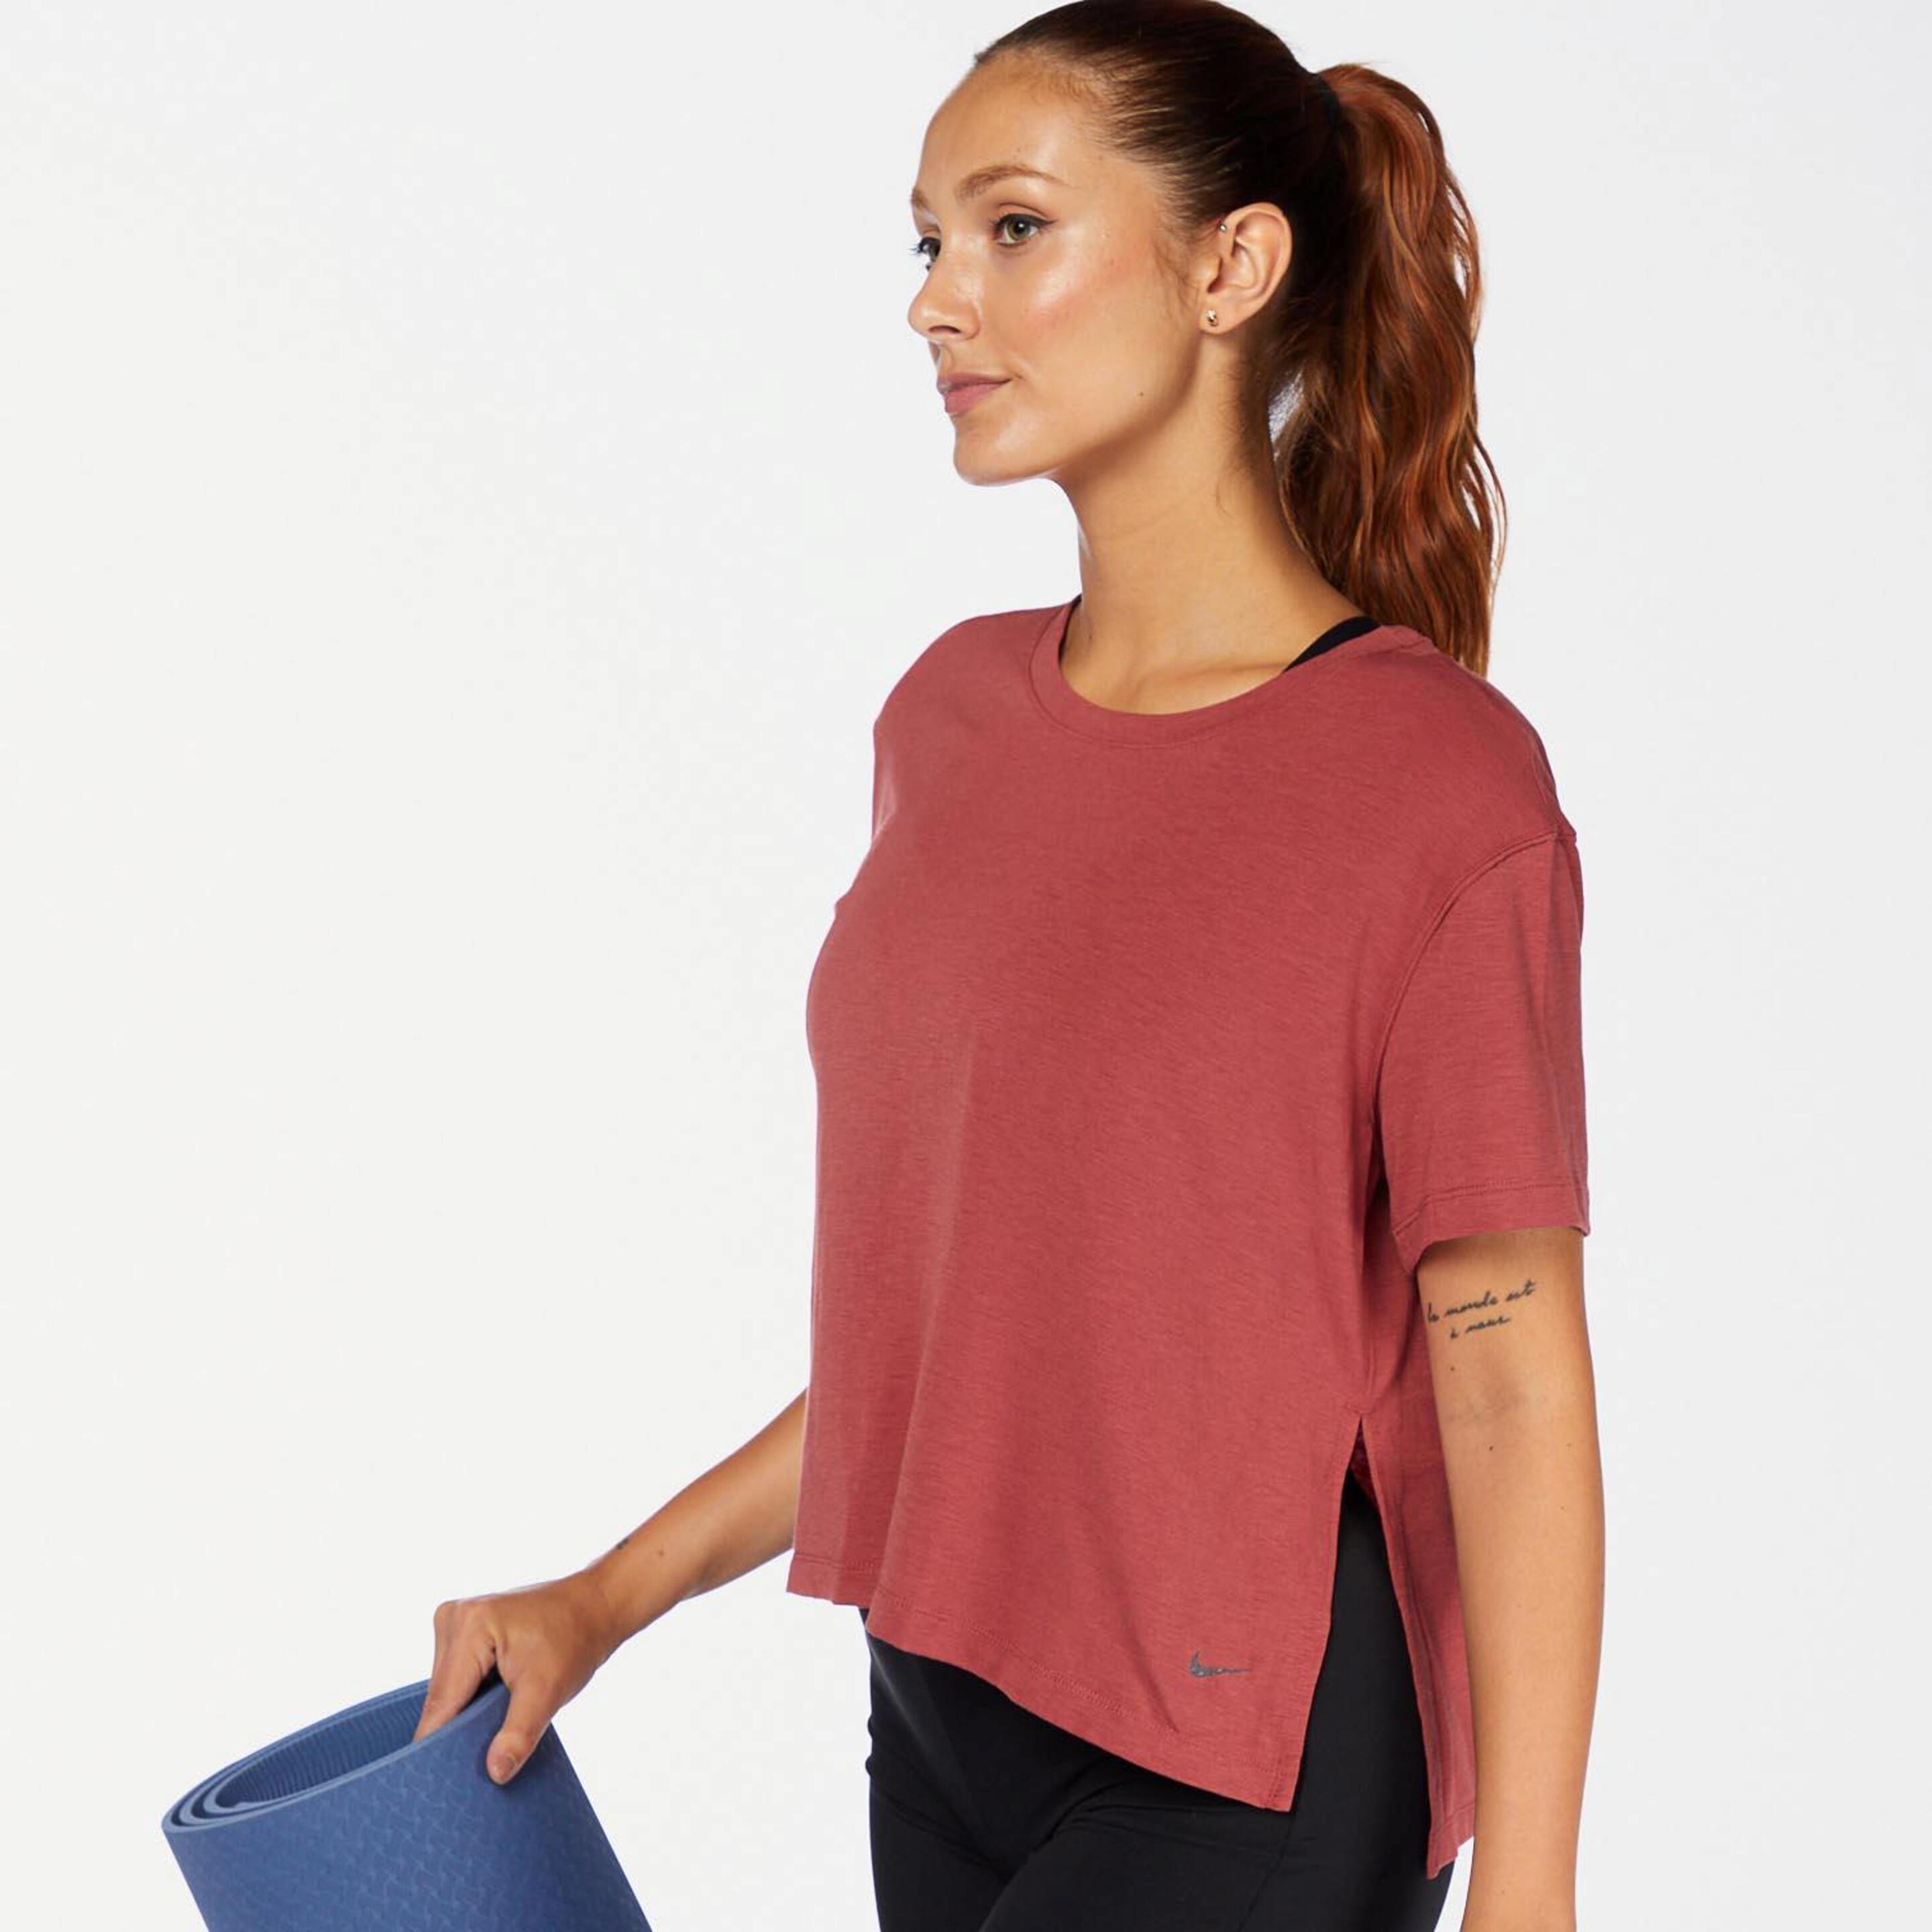 Camiseta Nike - Rosa - Camiseta Fitness Mujer